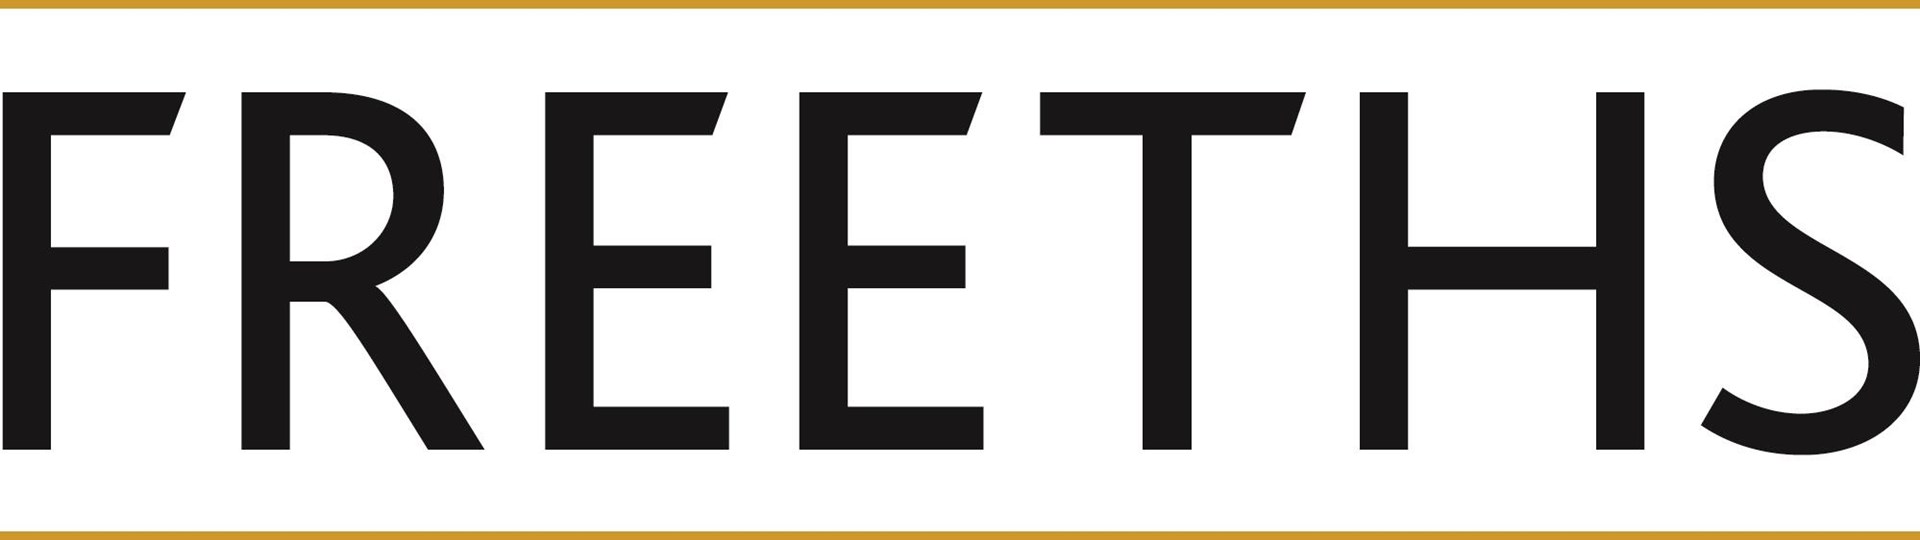 freeths-logo